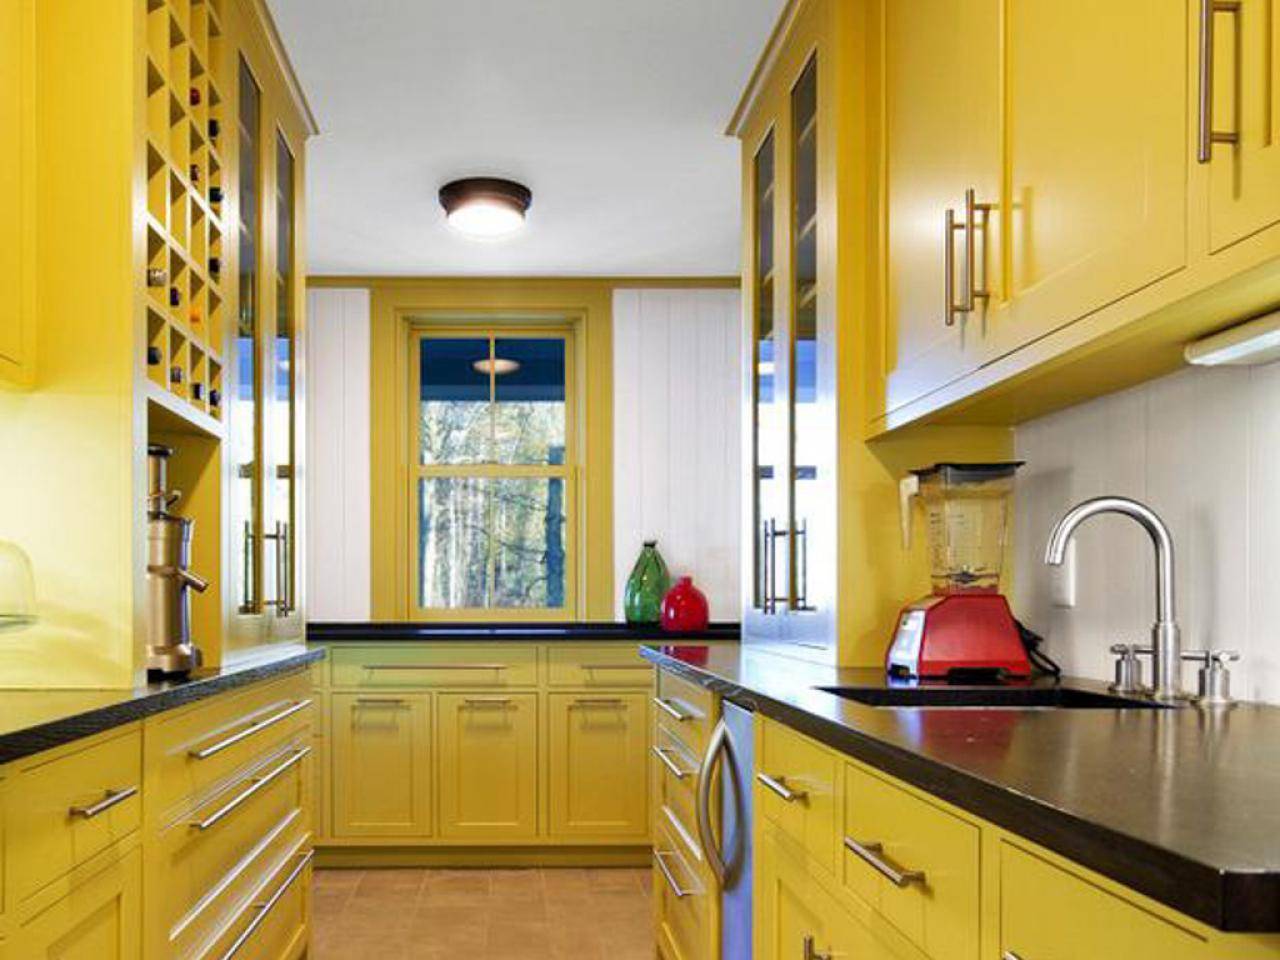 Желтая кухня: 140 реальных фото идеального сочетания желтого цвета в интерьере кухни